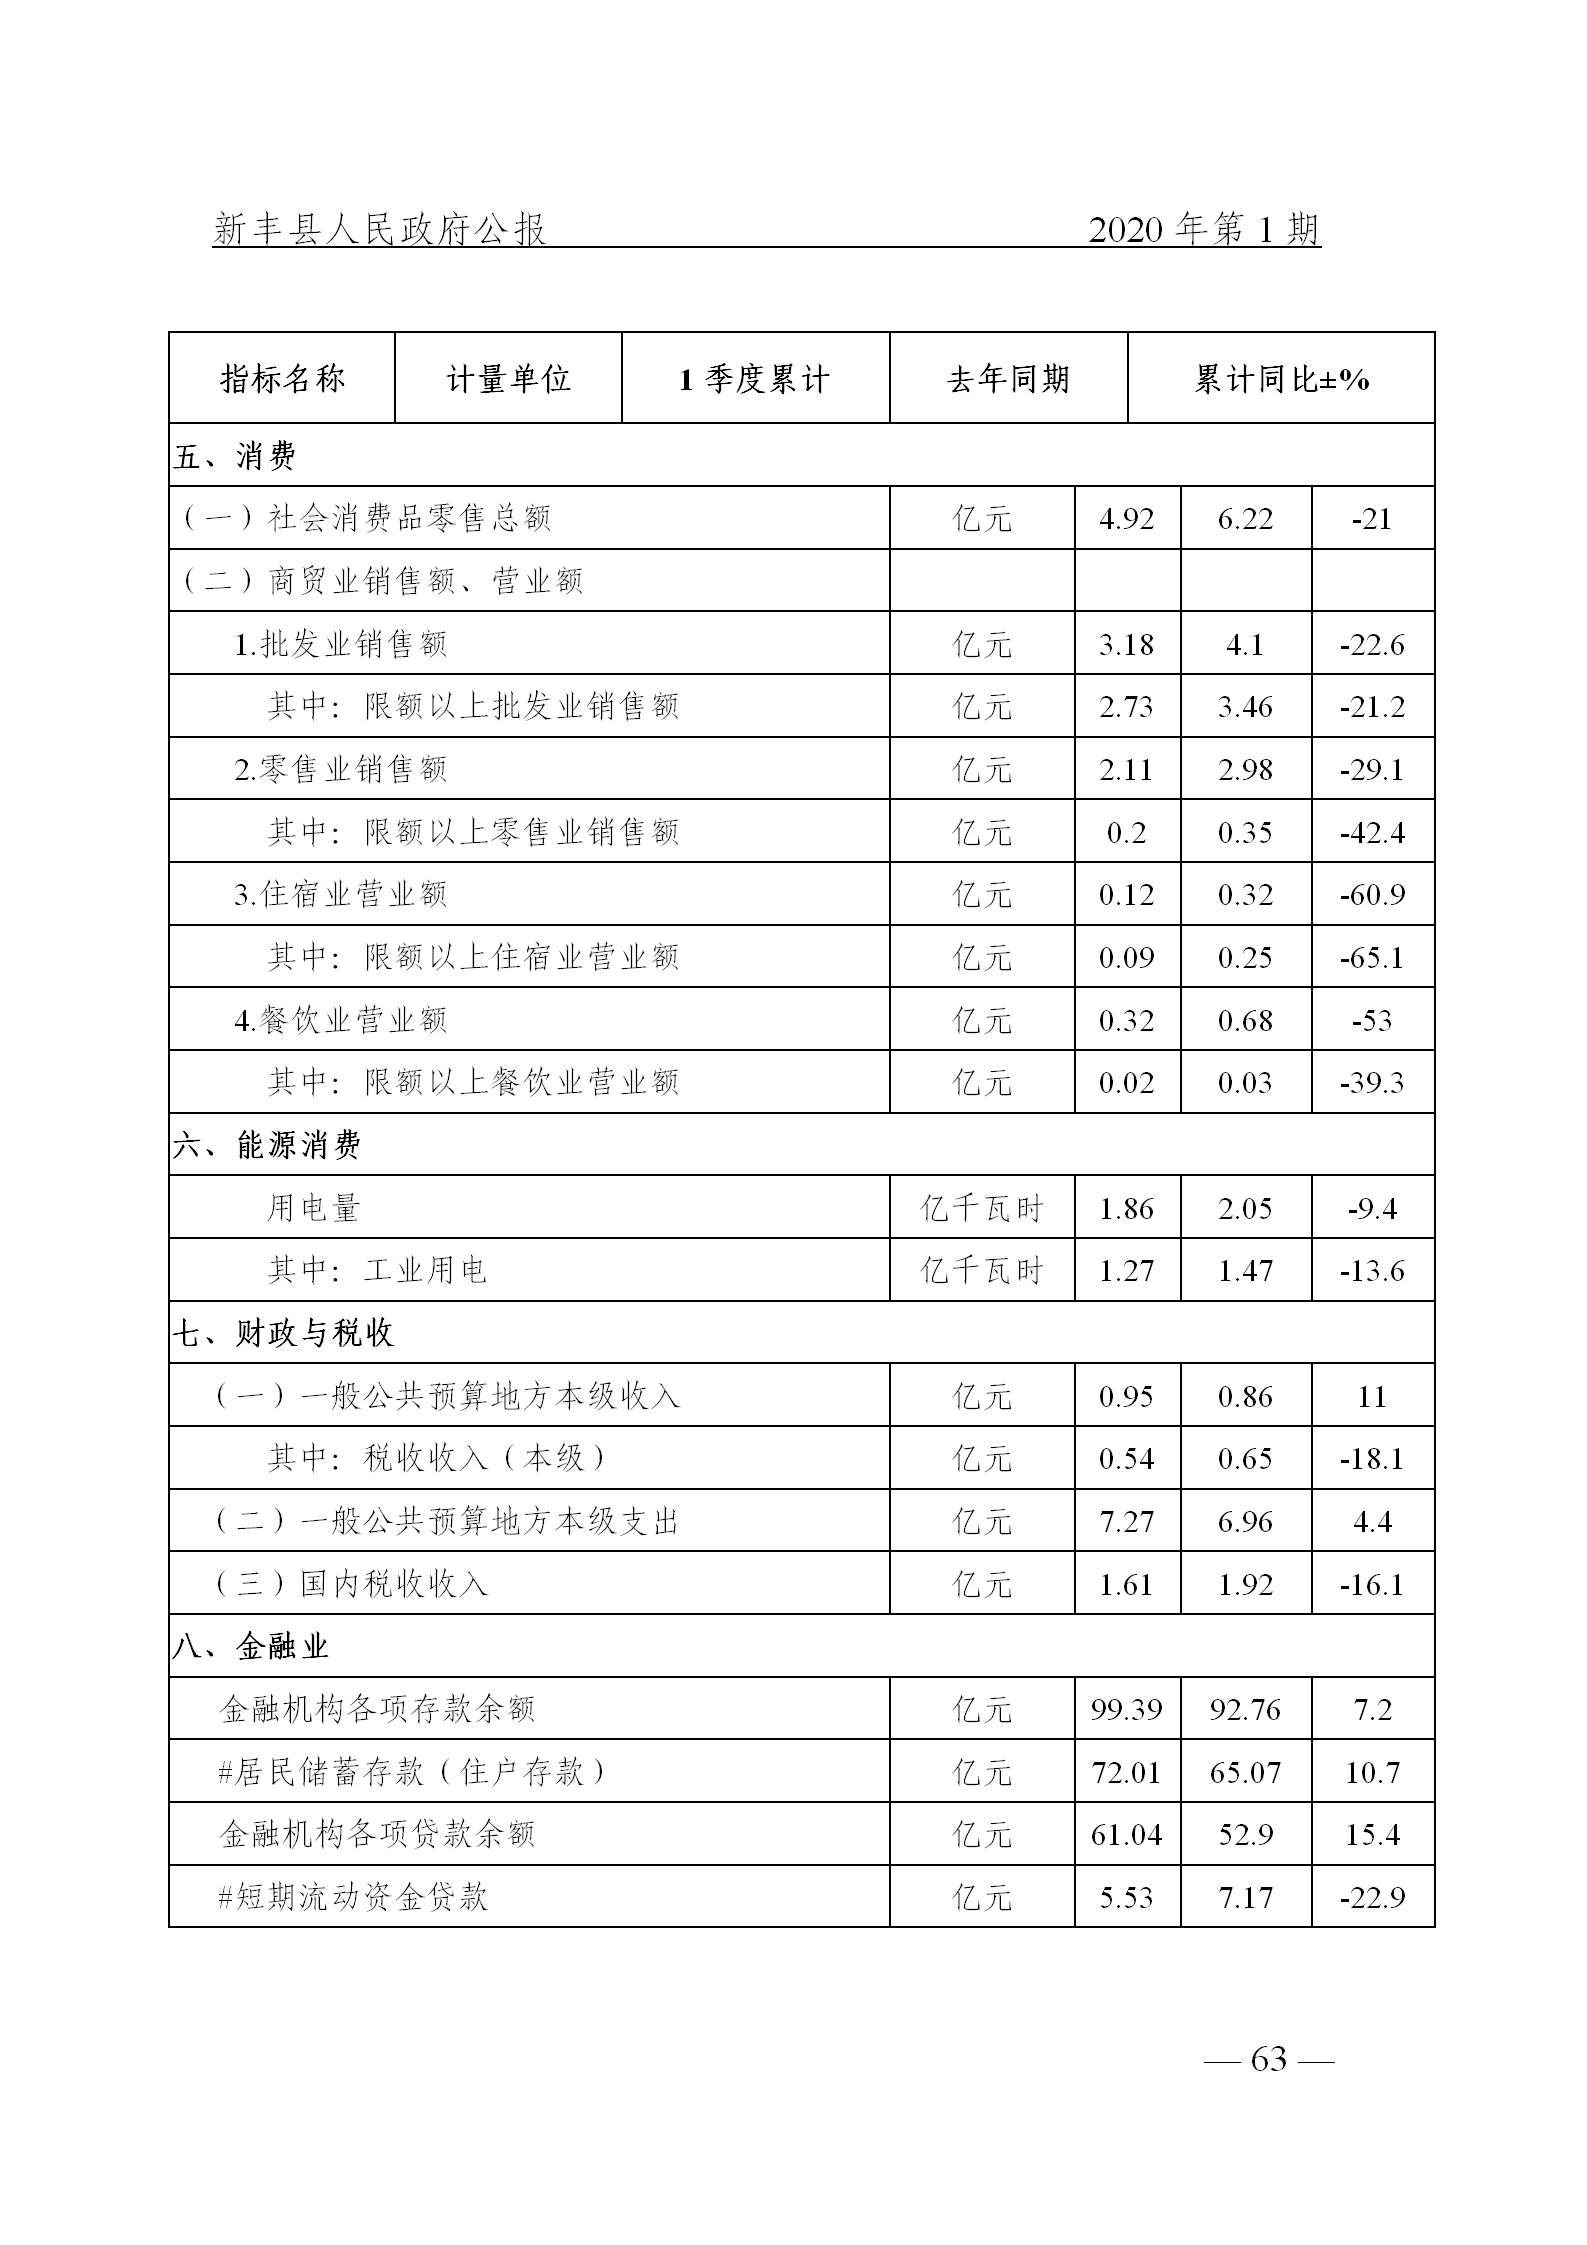 《新丰县人民政府公报》2020年第1期(1)_63.png